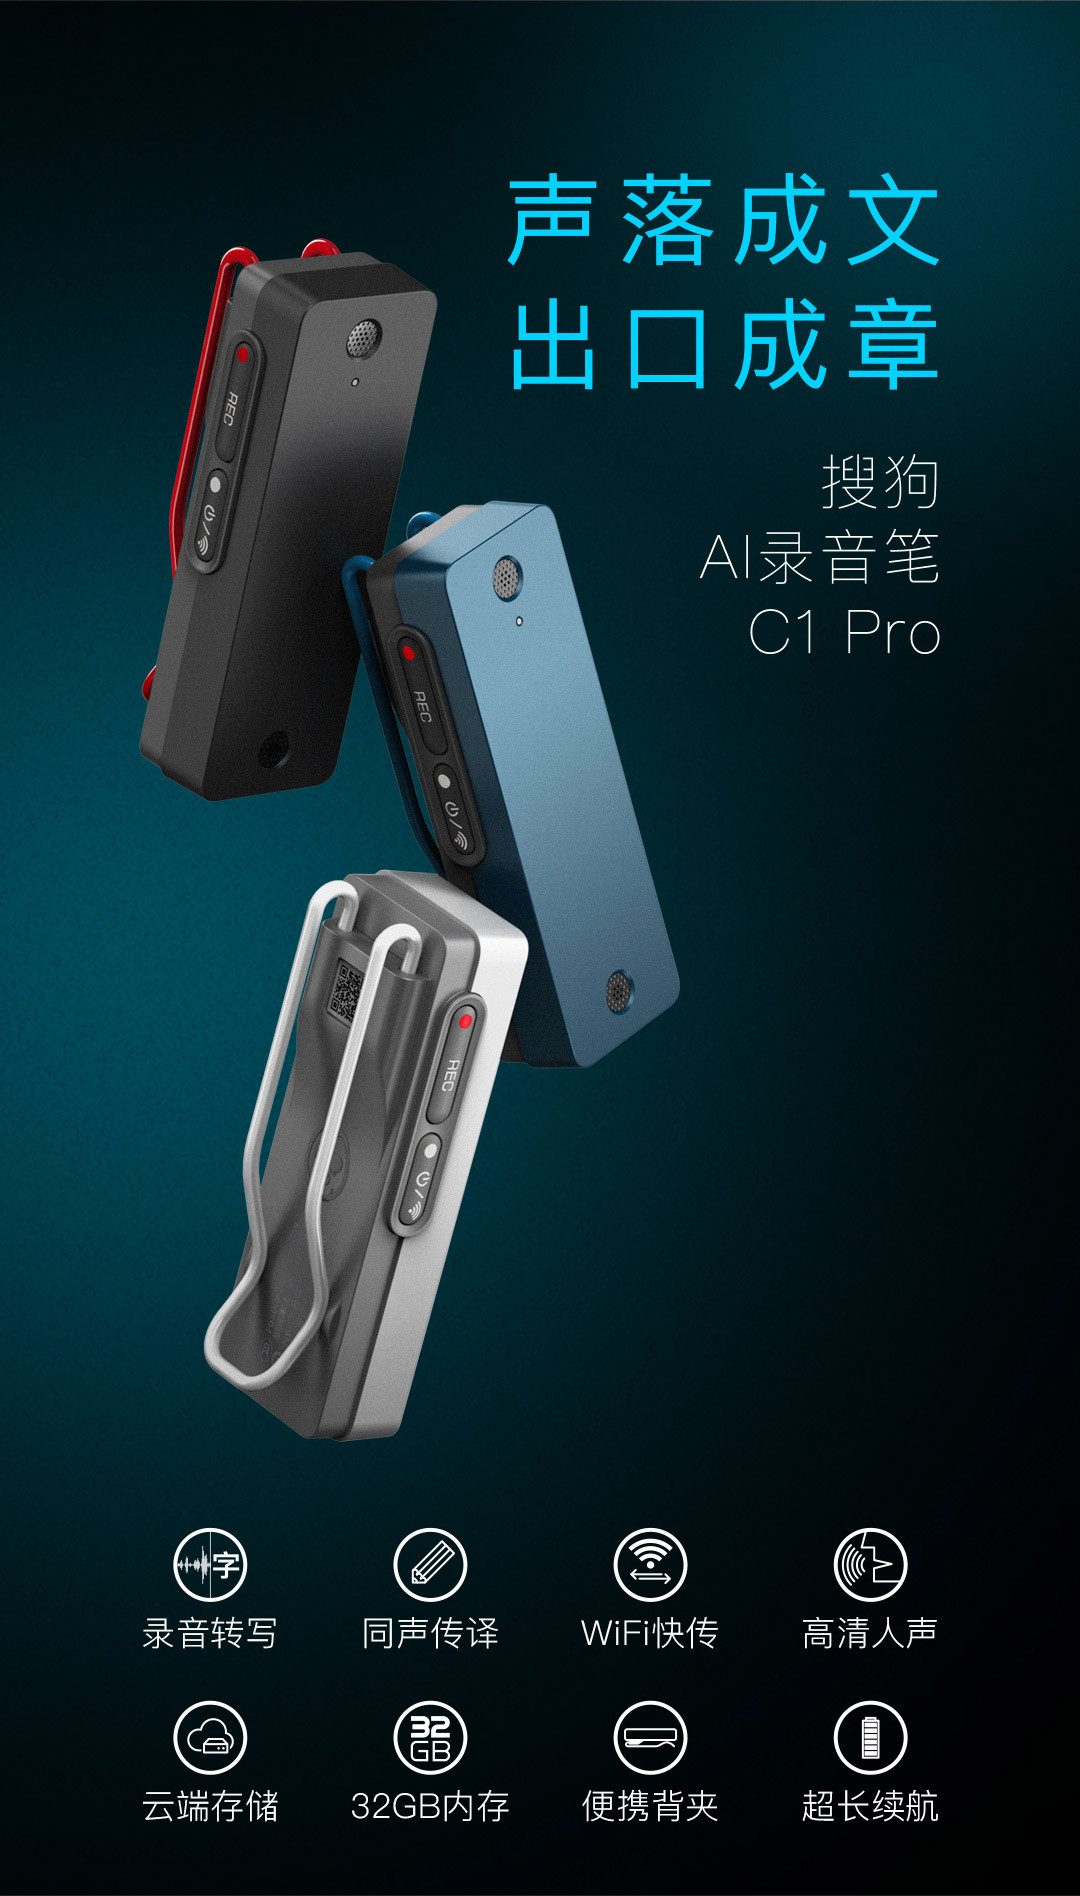 录音实时转写、首发Wi-Fi快传：Sogou 搜狗 AI录音笔C1 Pro 正式开卖